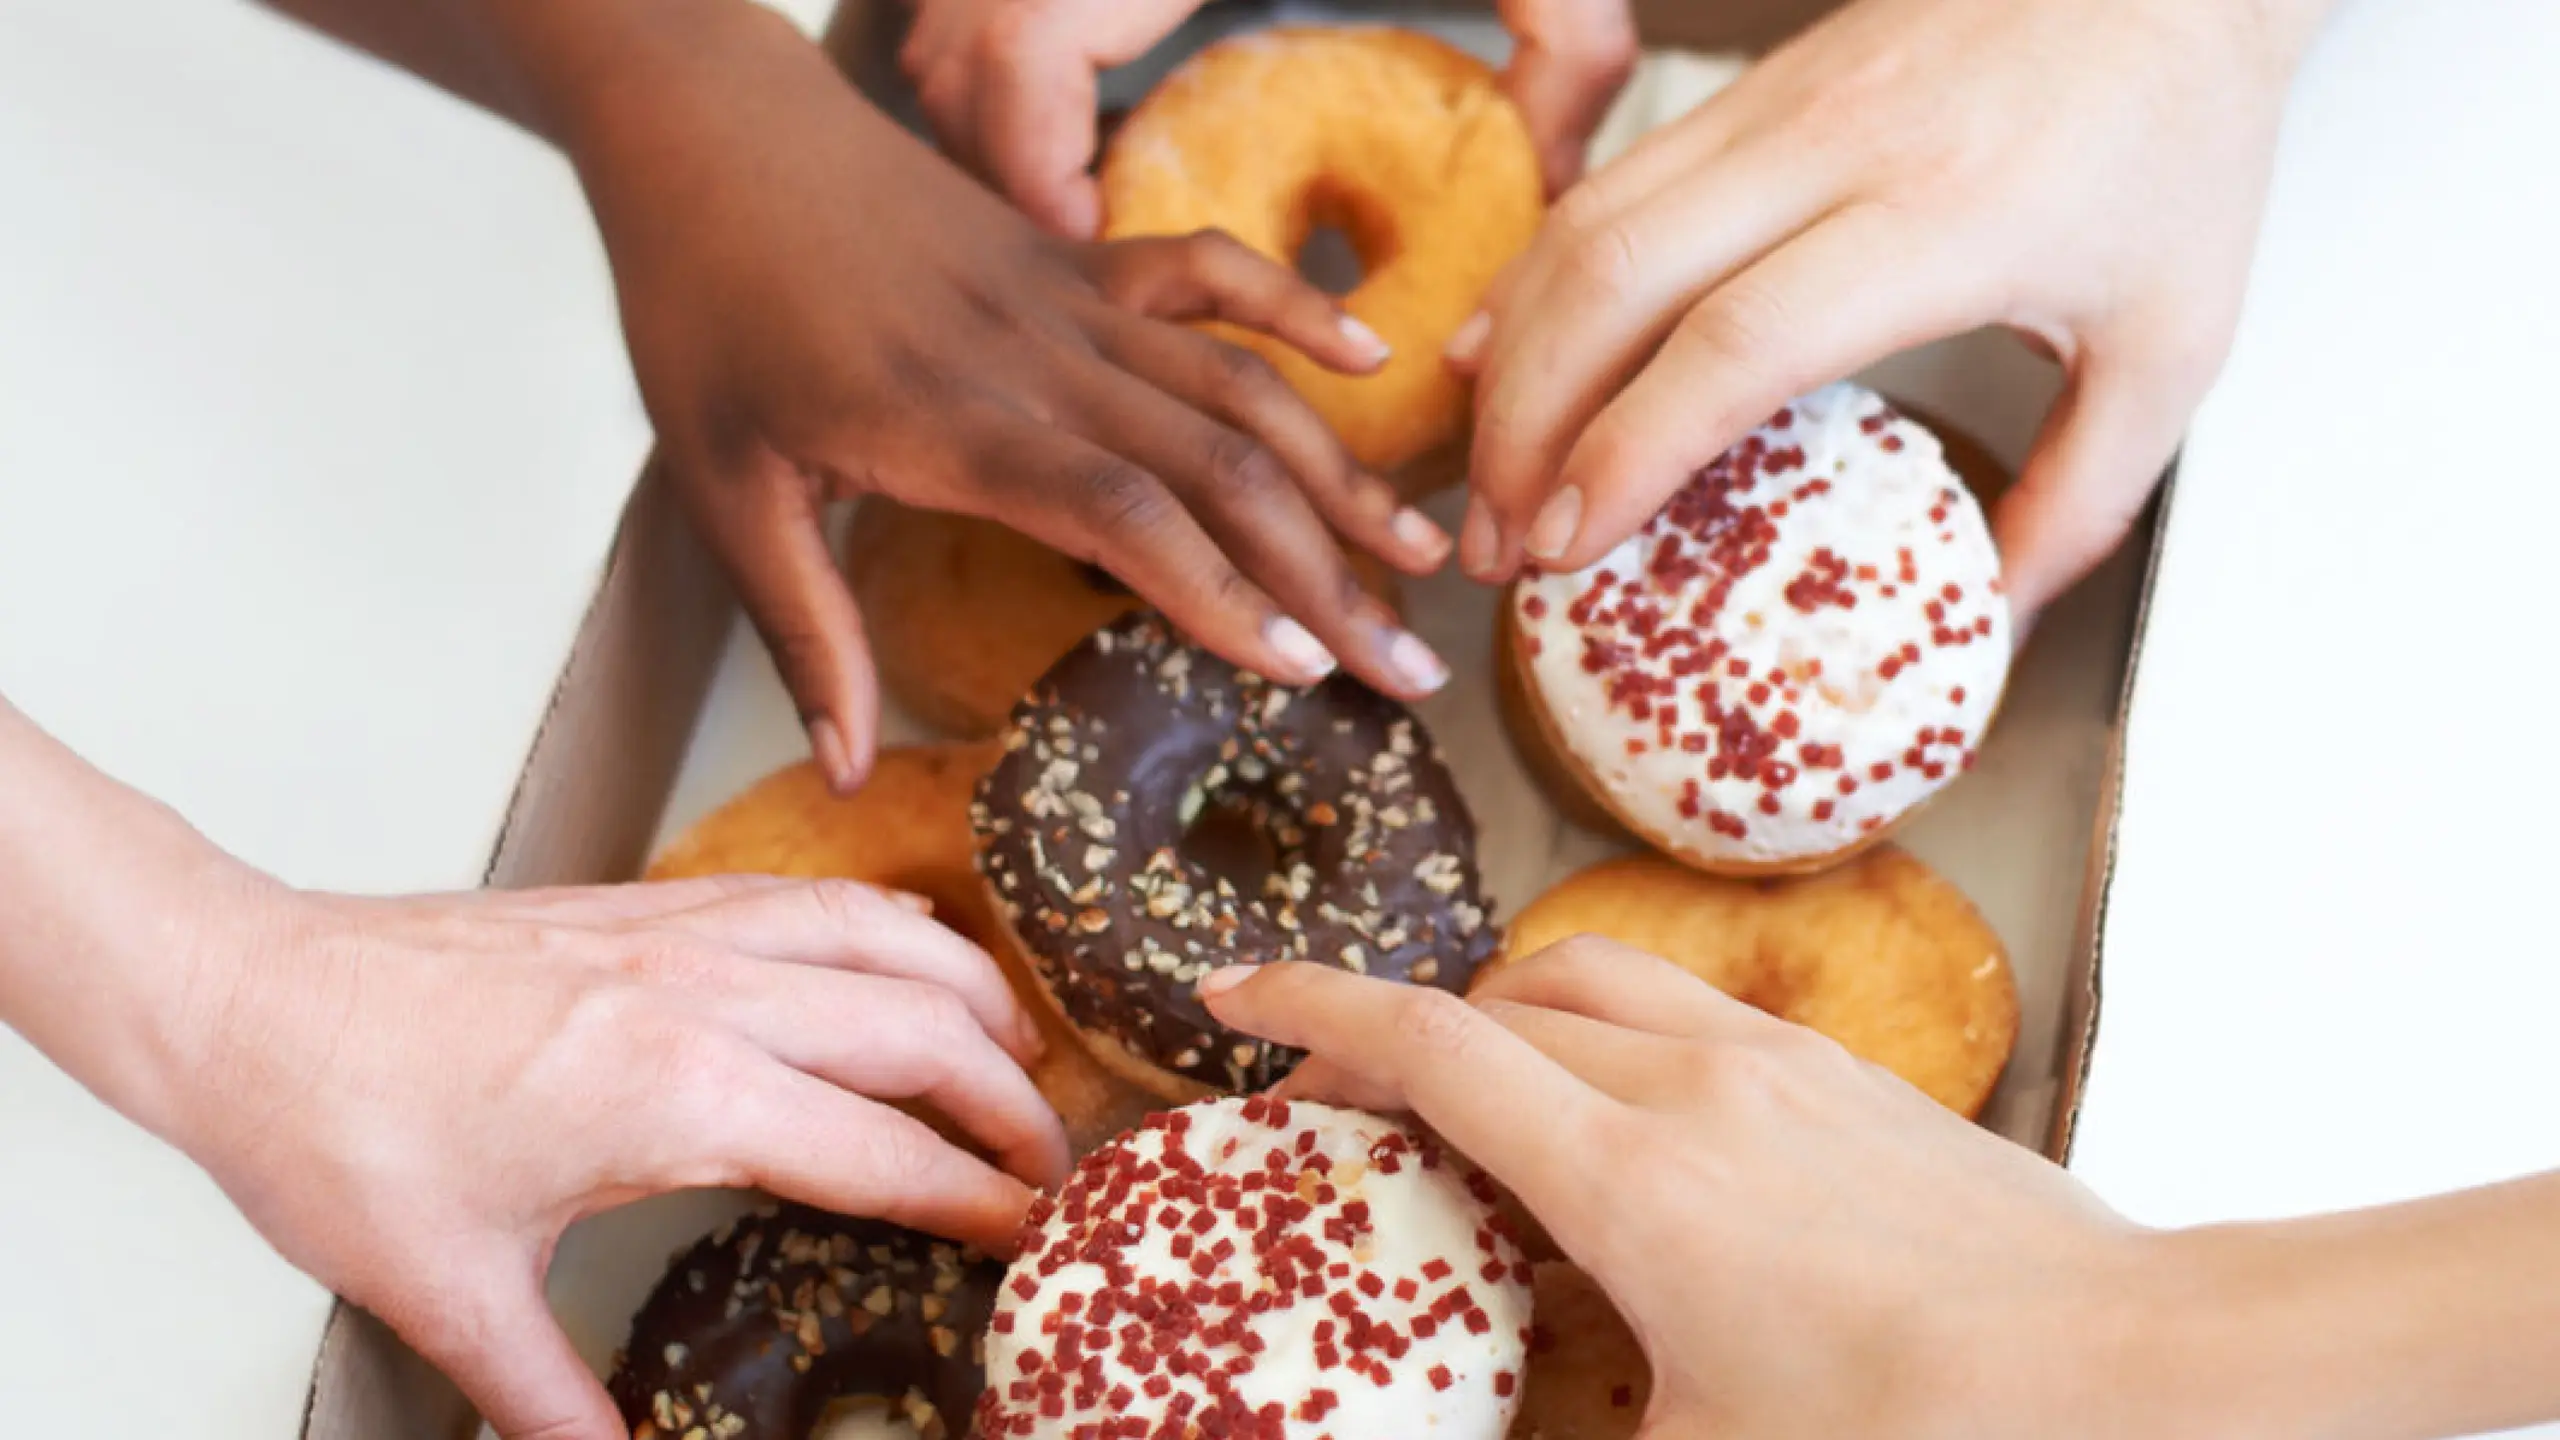 Frauenhände, die in eine Verpackung mit Donuts greifen